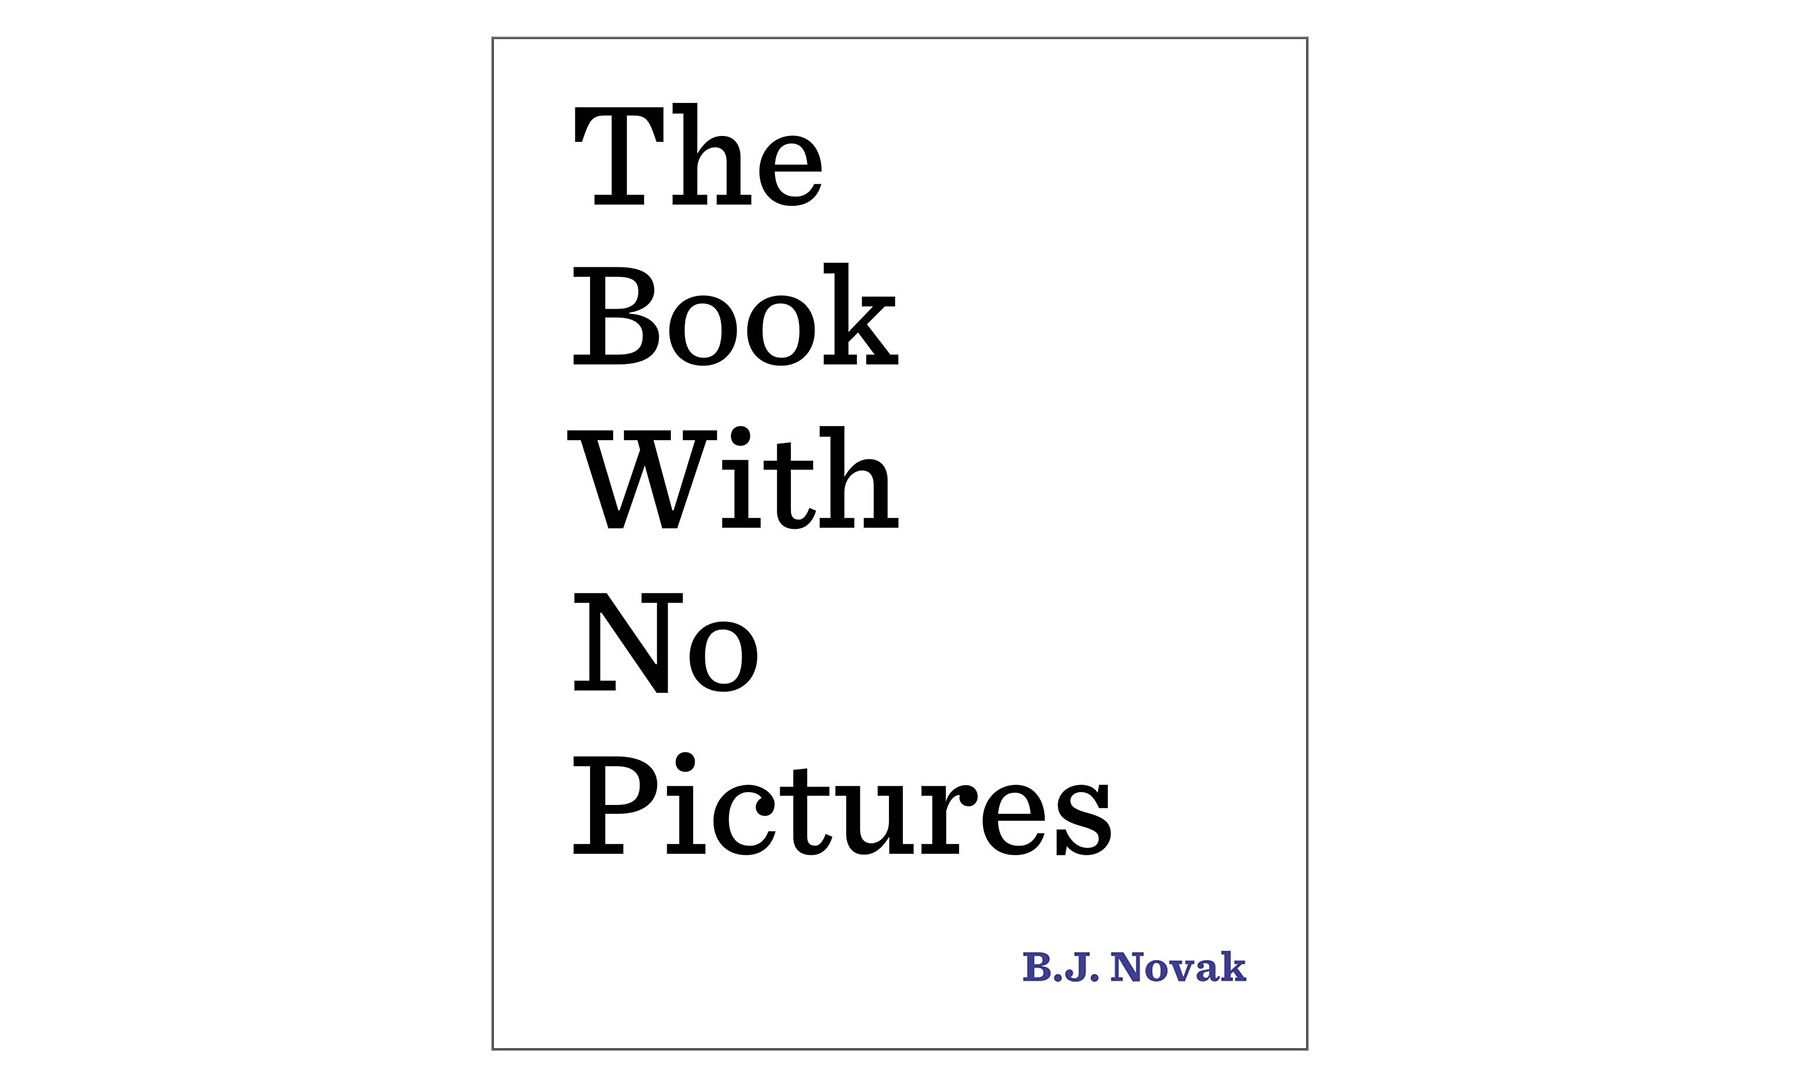 Le livre sans images, de B.J. Novak